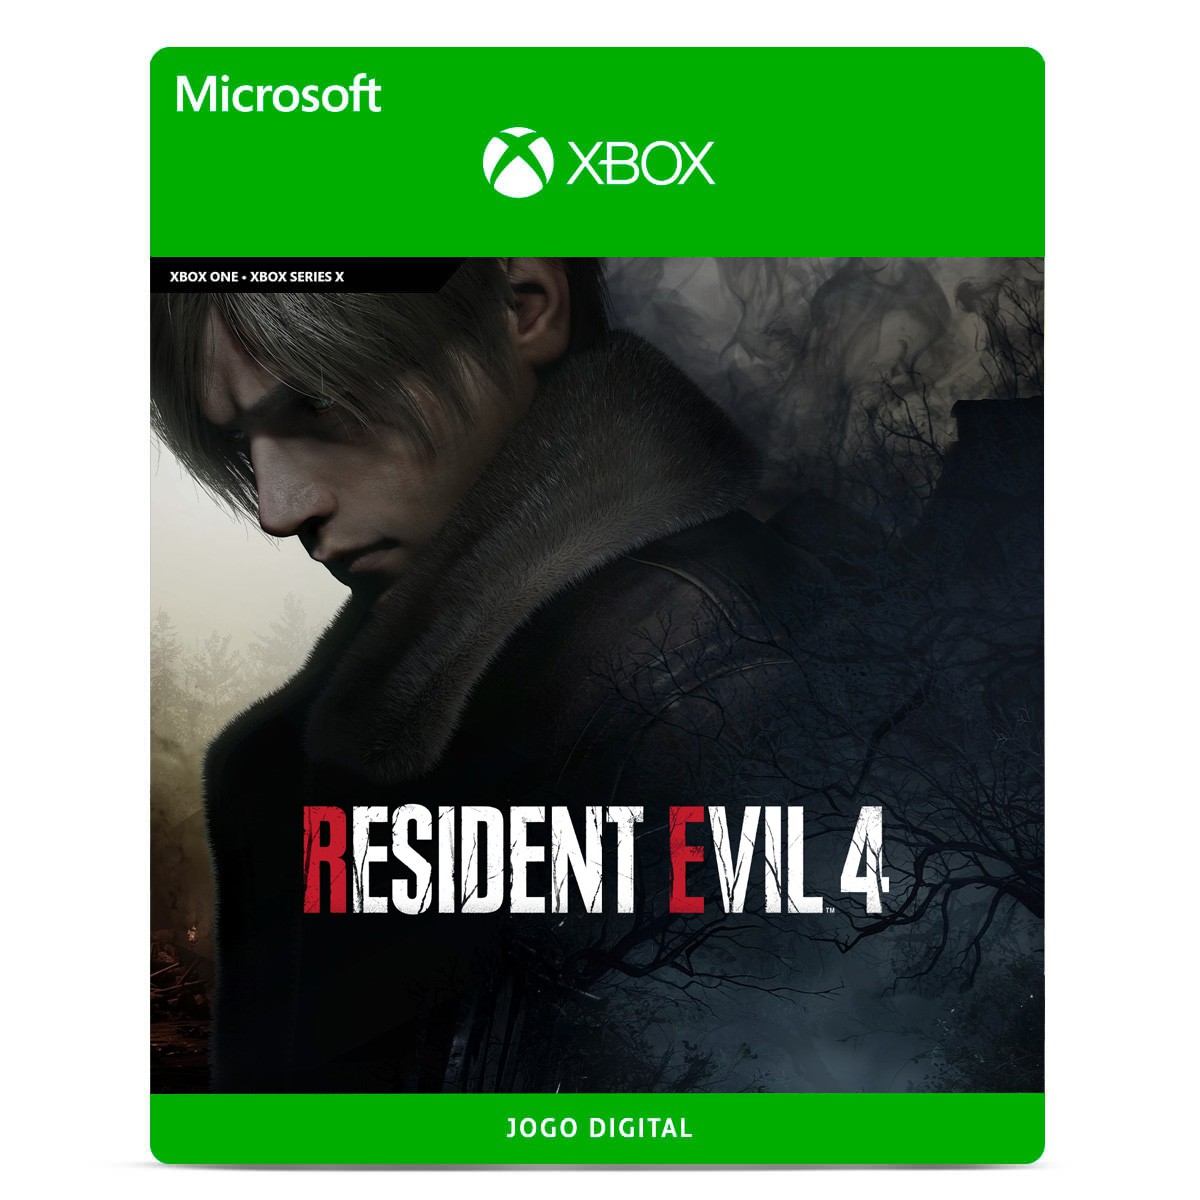 Resident Evil 3 Remake Xbox One Codigo 25 Digitos